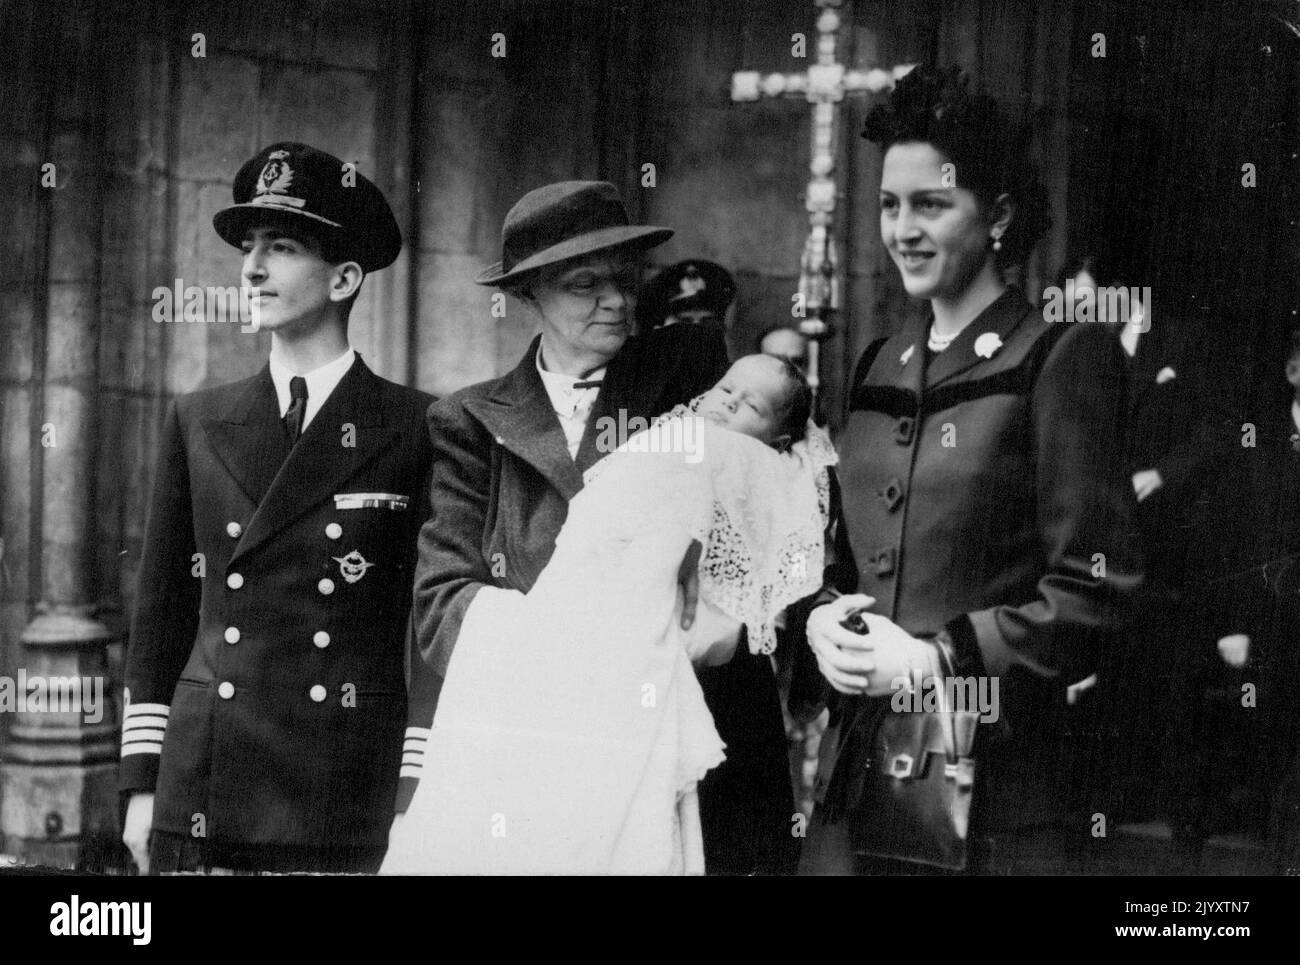 El Hijo del Rey Pedro se bautizó en la Abadía de Westminster. Fotos: El rey y la reina de Yugoslavia se van con el hijo y el heredero, después de la ceremonia de bautizo, celebrada en la Abadía de Westminster, Londres. 24 de octubre de 1945. Foto de stock